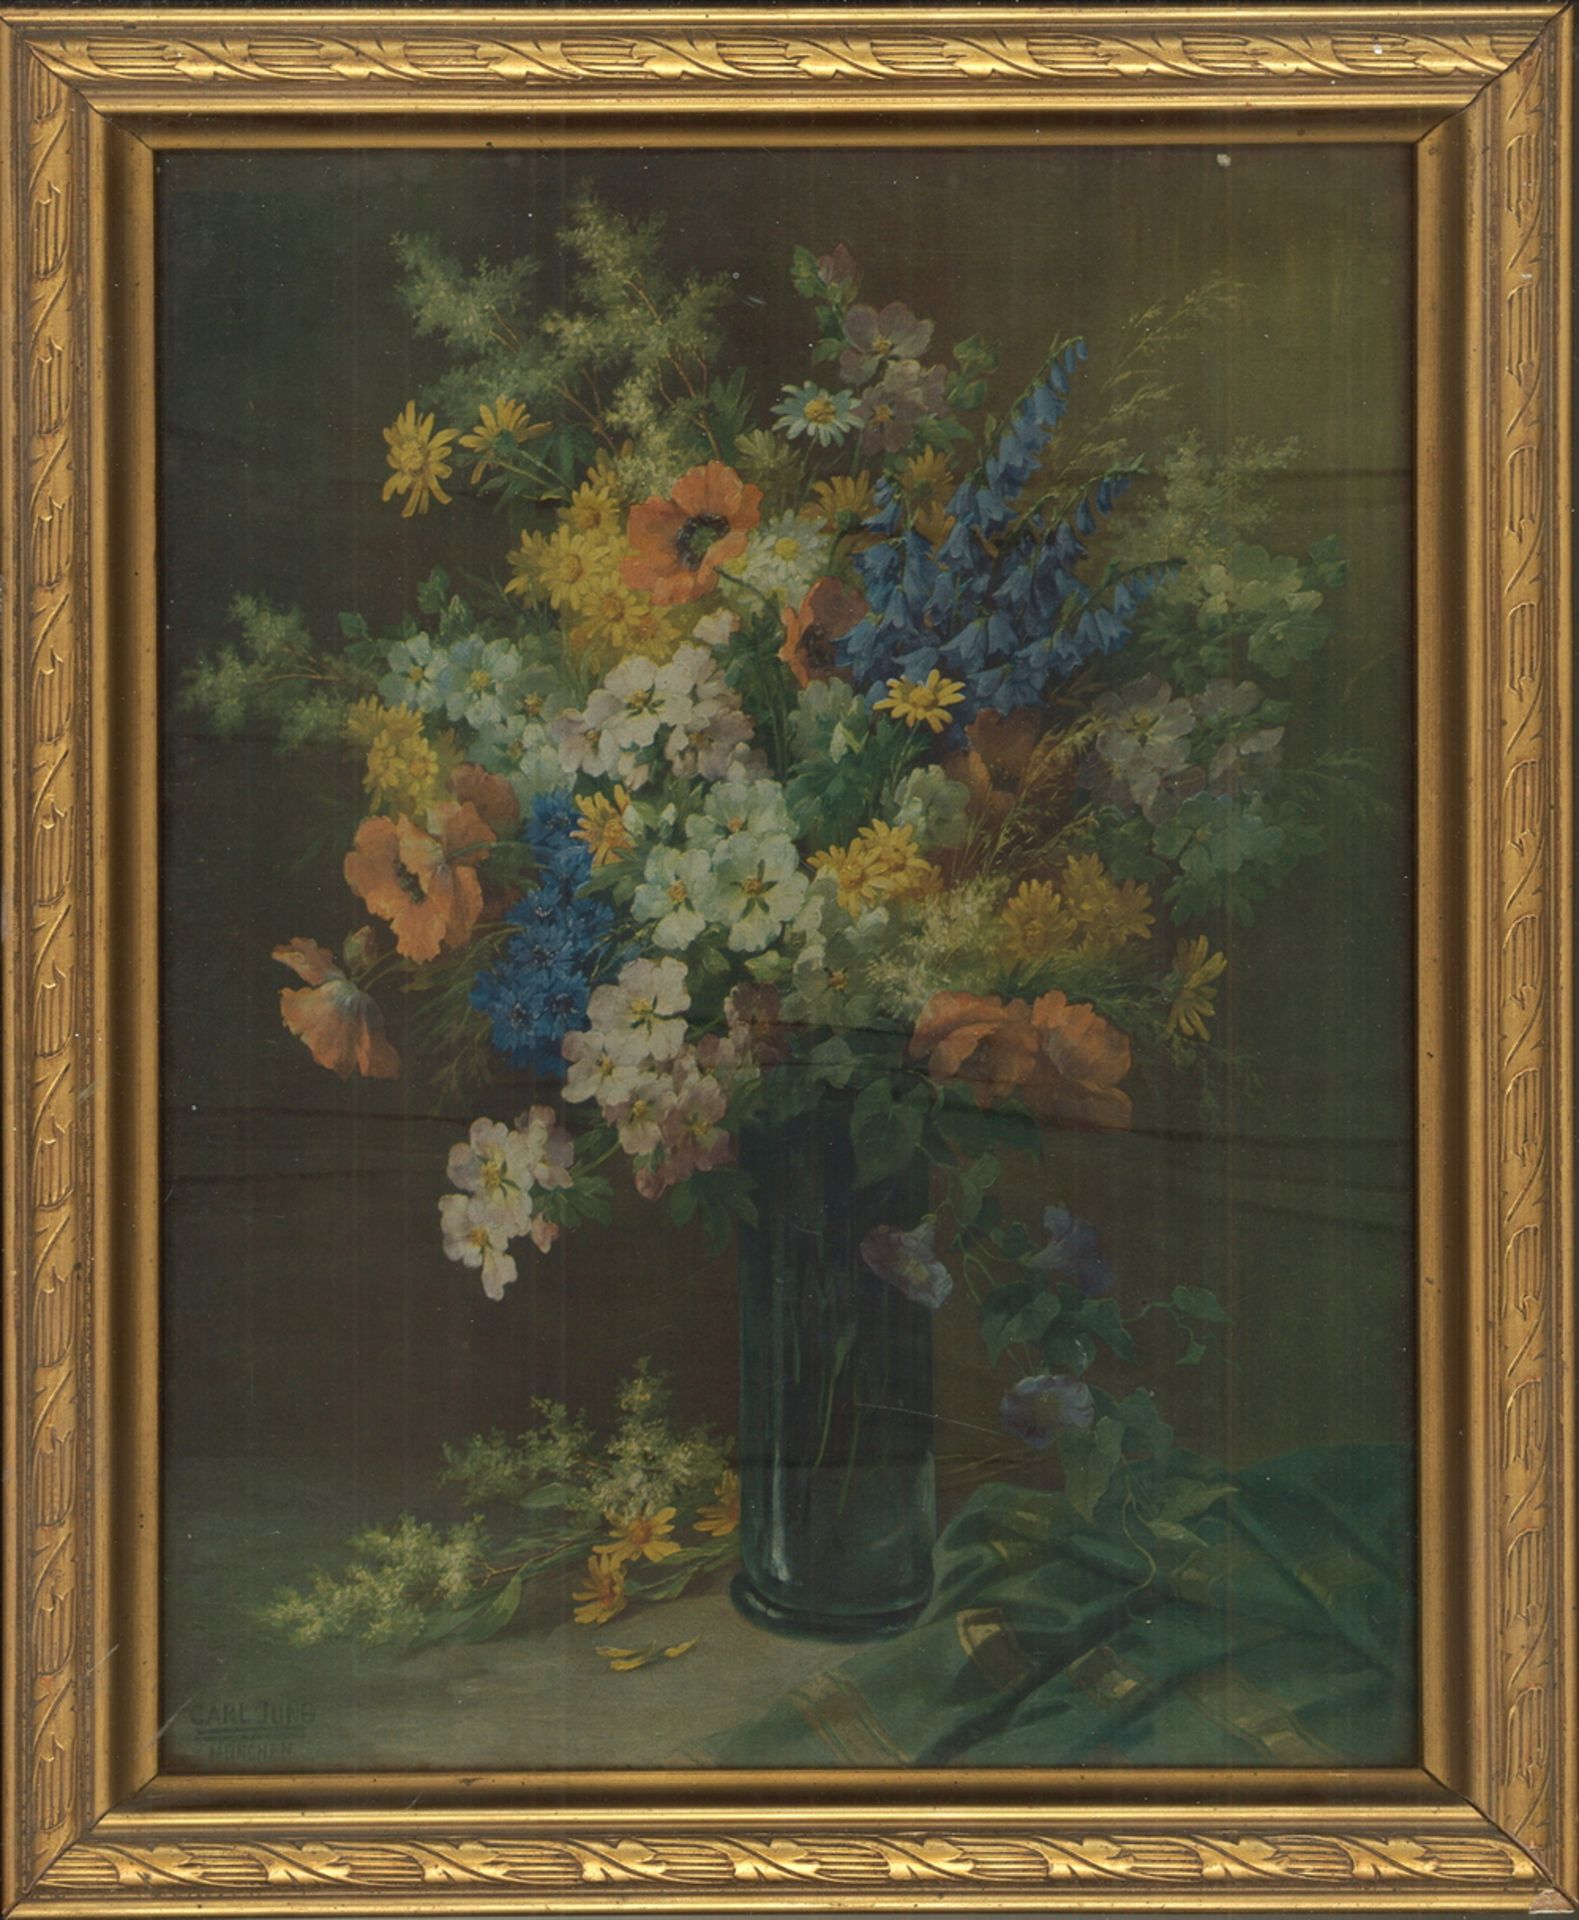 Druck "Blumenstrauß" nach einem Gemälde von Carl Jung, hinter Glas gerahmt. Gesamtmaße: Höhe ca.